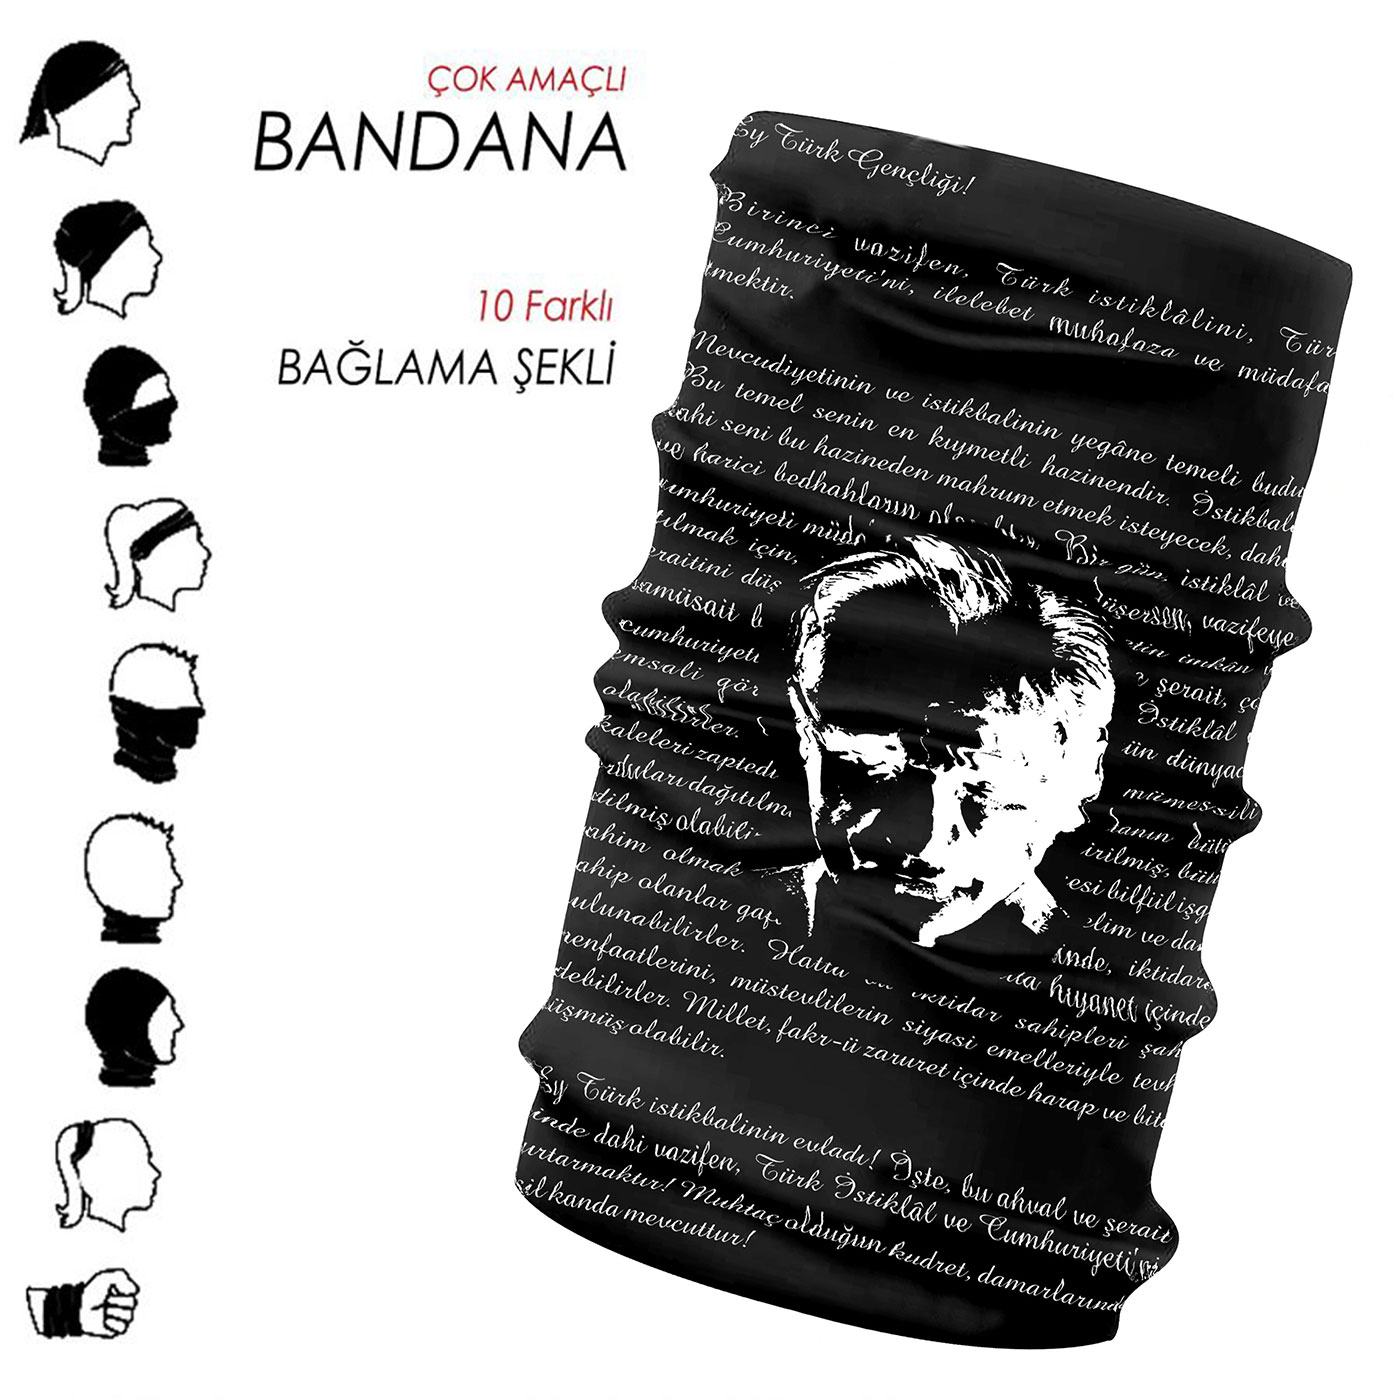 Bandana - 03